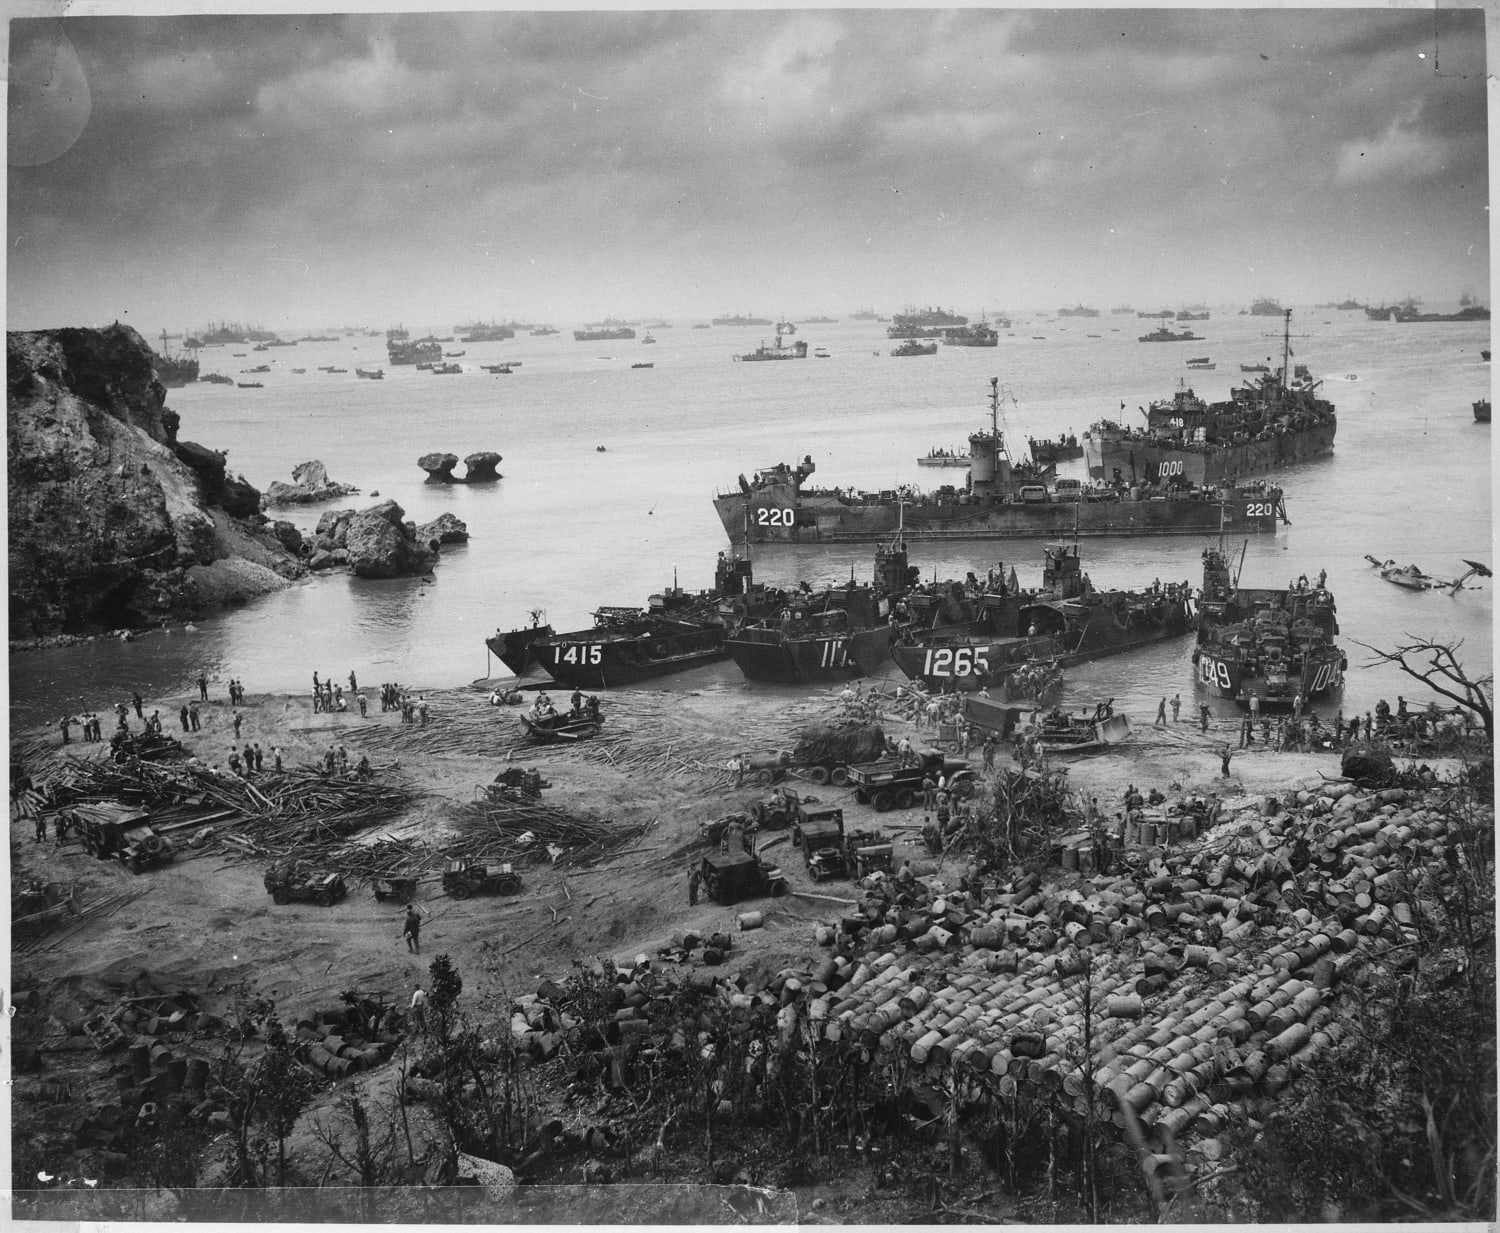 US ships unload supplies at a beachhead at Okinawa, April 13, 1945